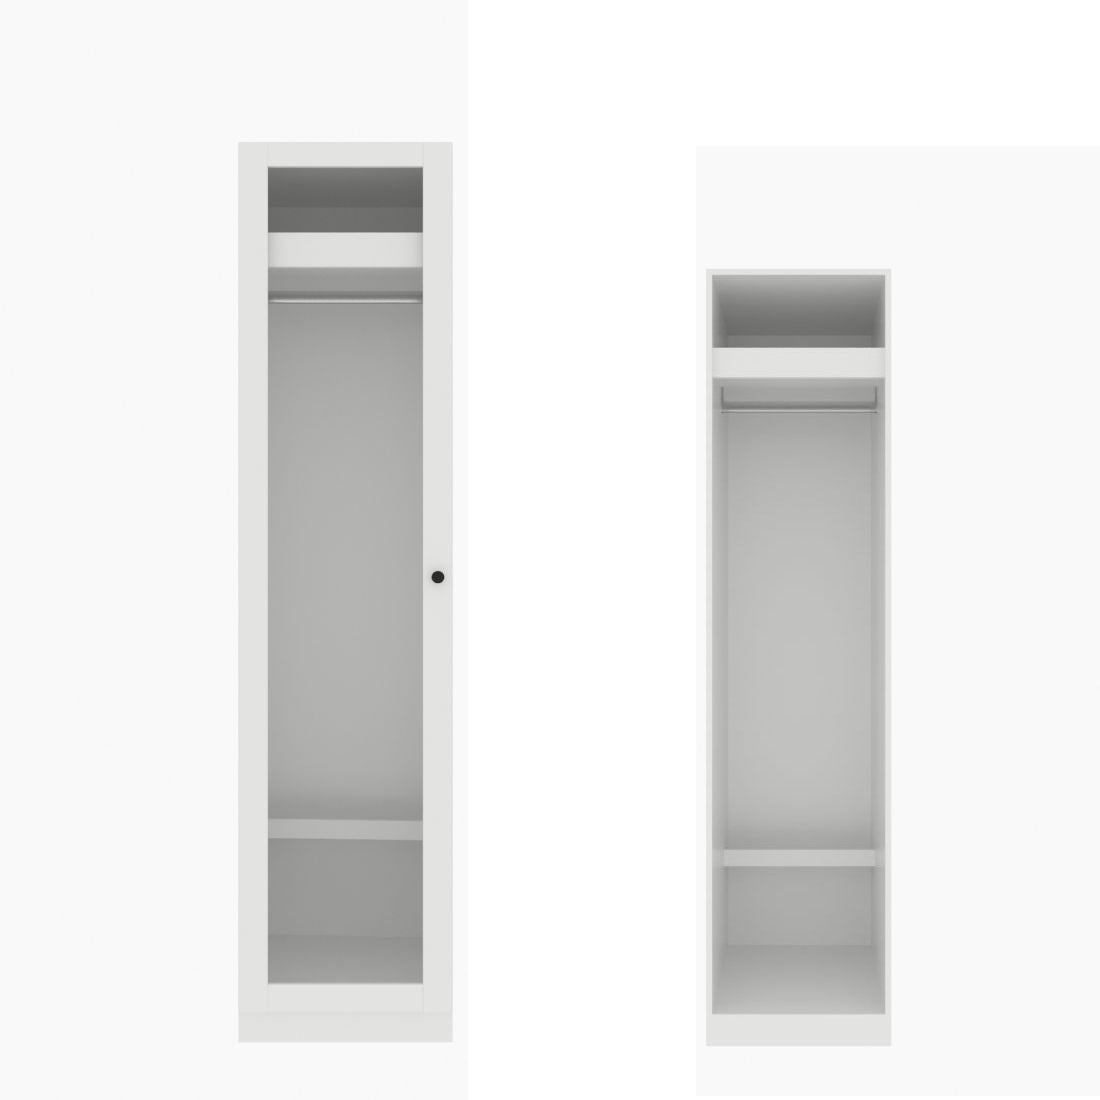 ตู้เสื้อผ้า ราวแขวนโล่ง OP-J (หน้าบานเปิดซ้าย) ขนาด 50 ซม. รุ่น Blox สีขาว&กระจกใส01